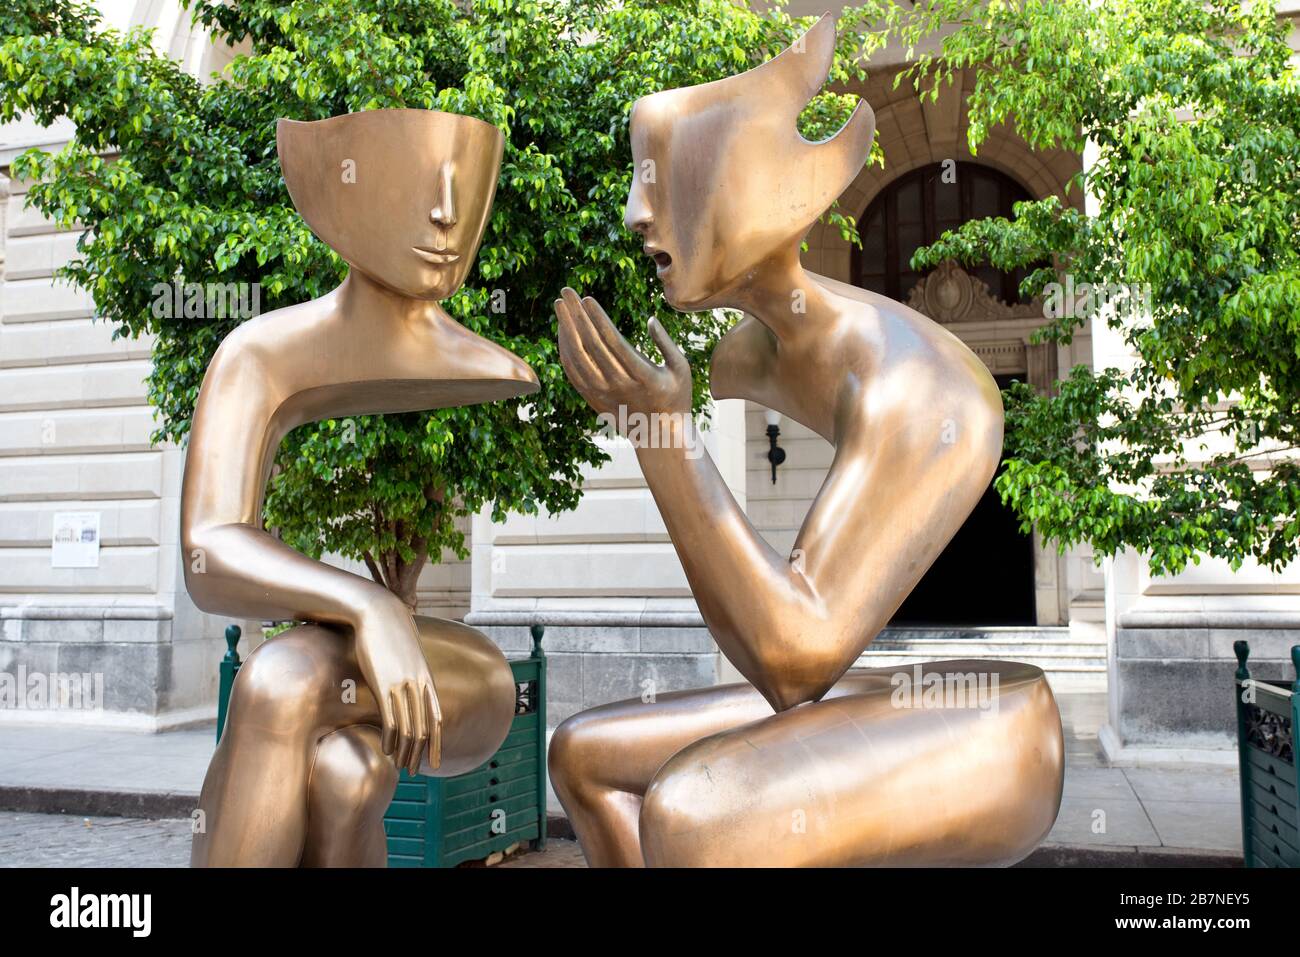 Sculpture contemporaine en bronze intitulée 'la Conversación' (la conversation) réalisée par l'artiste français Etienne. Plaza San Francisco, la Havane. Banque D'Images